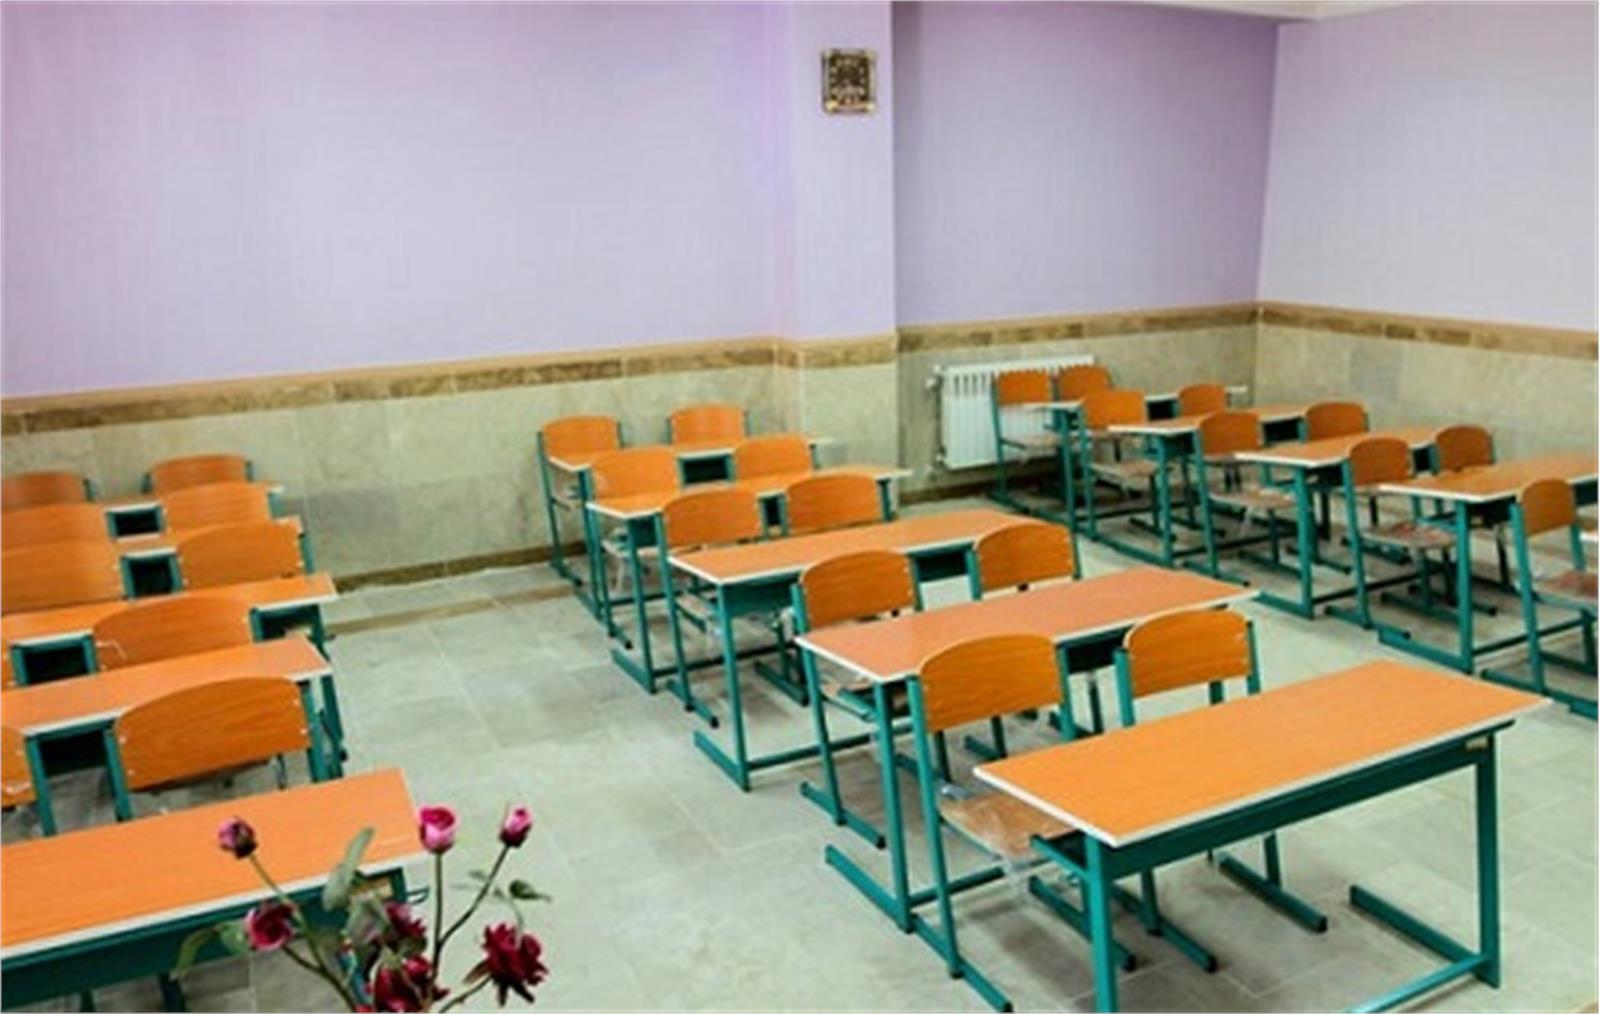 ۴۰ هزار دانش آموز خراسان شمالی تحت پوشش بنیاد مستضعفان قرار گرفتند